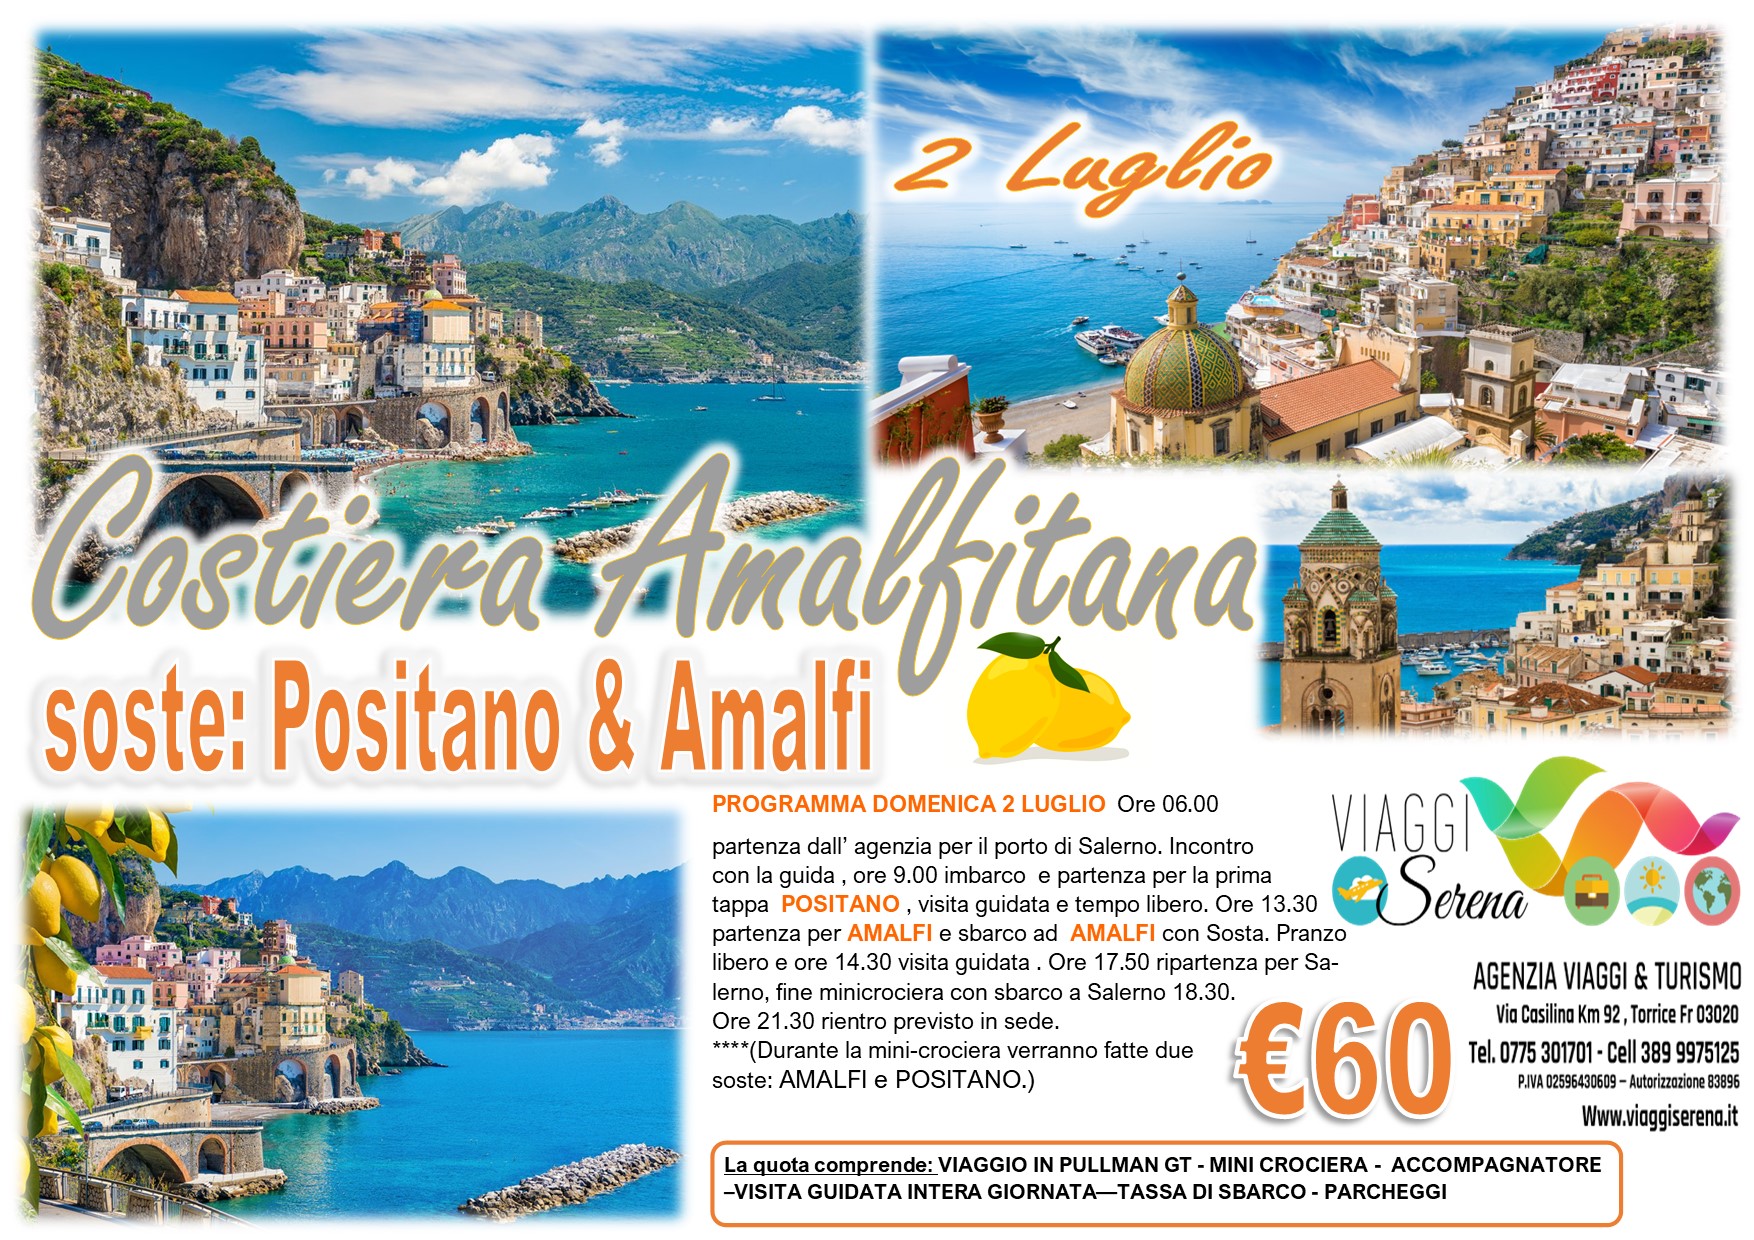 Viaggi di Gruppo: Mini Crociera Costiera Amalfitana “Amalfi & Positano” 2 Luglio € 60,00